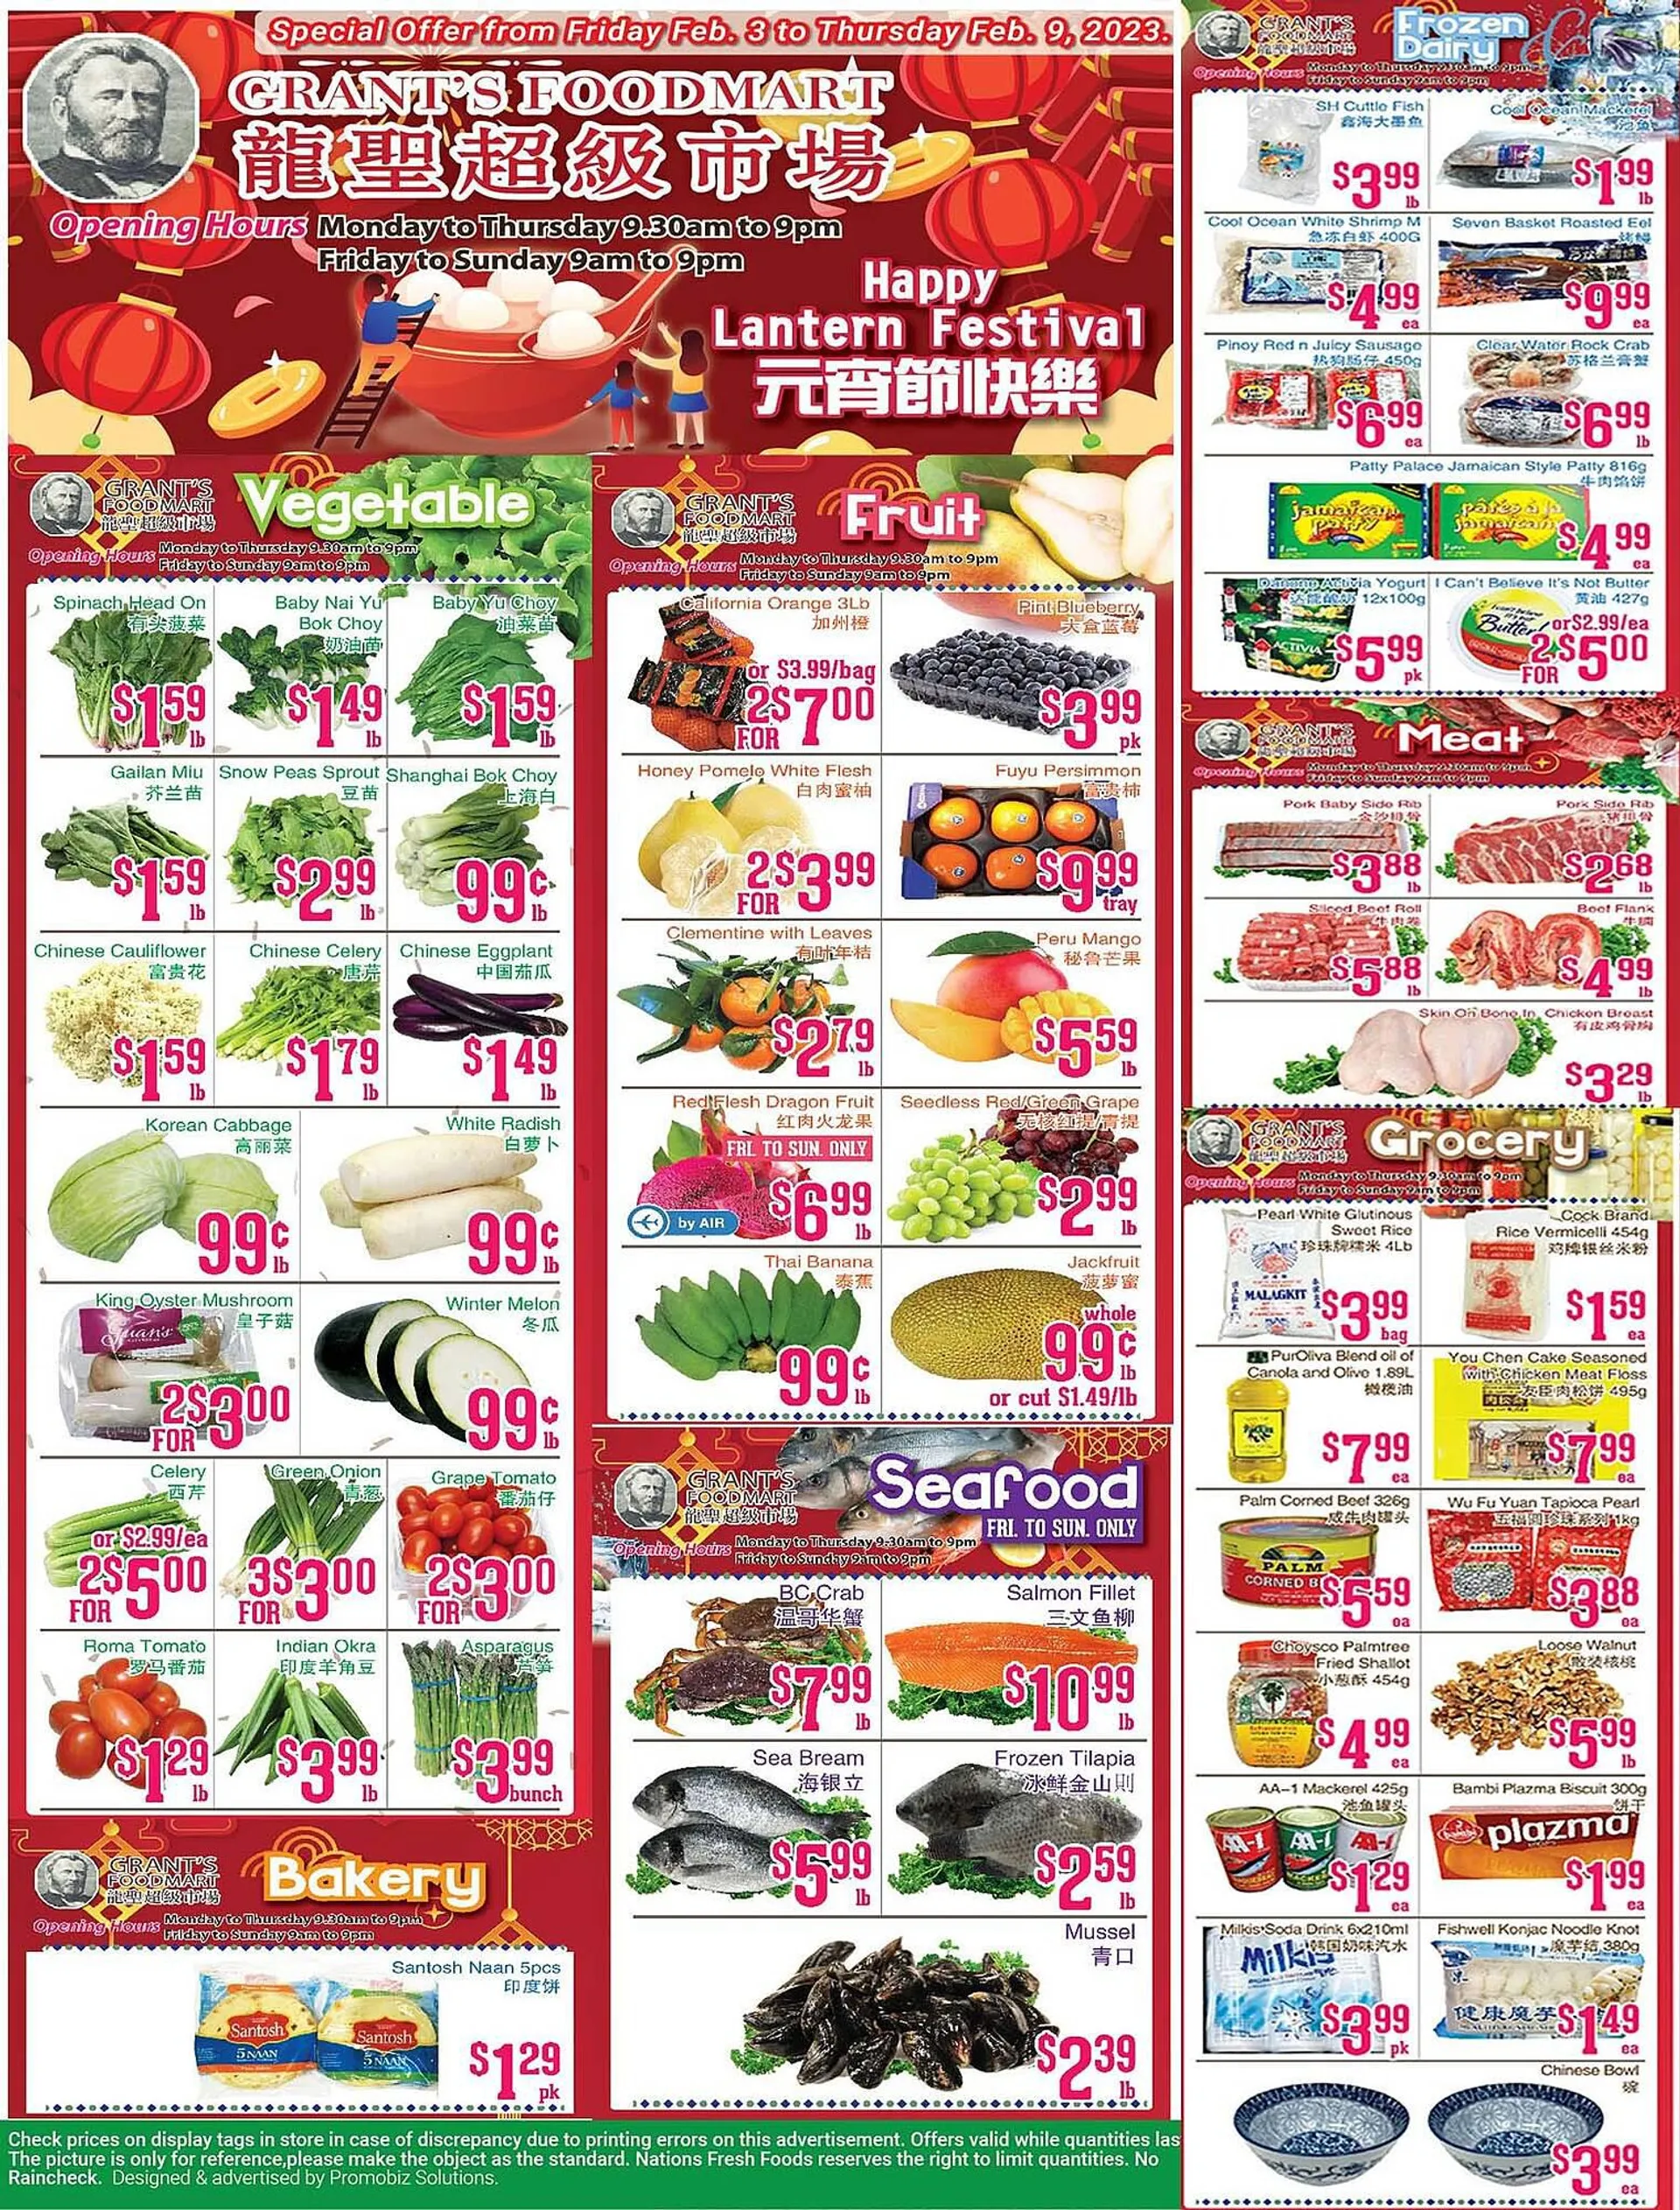 Grants Foodmart flyer - 1